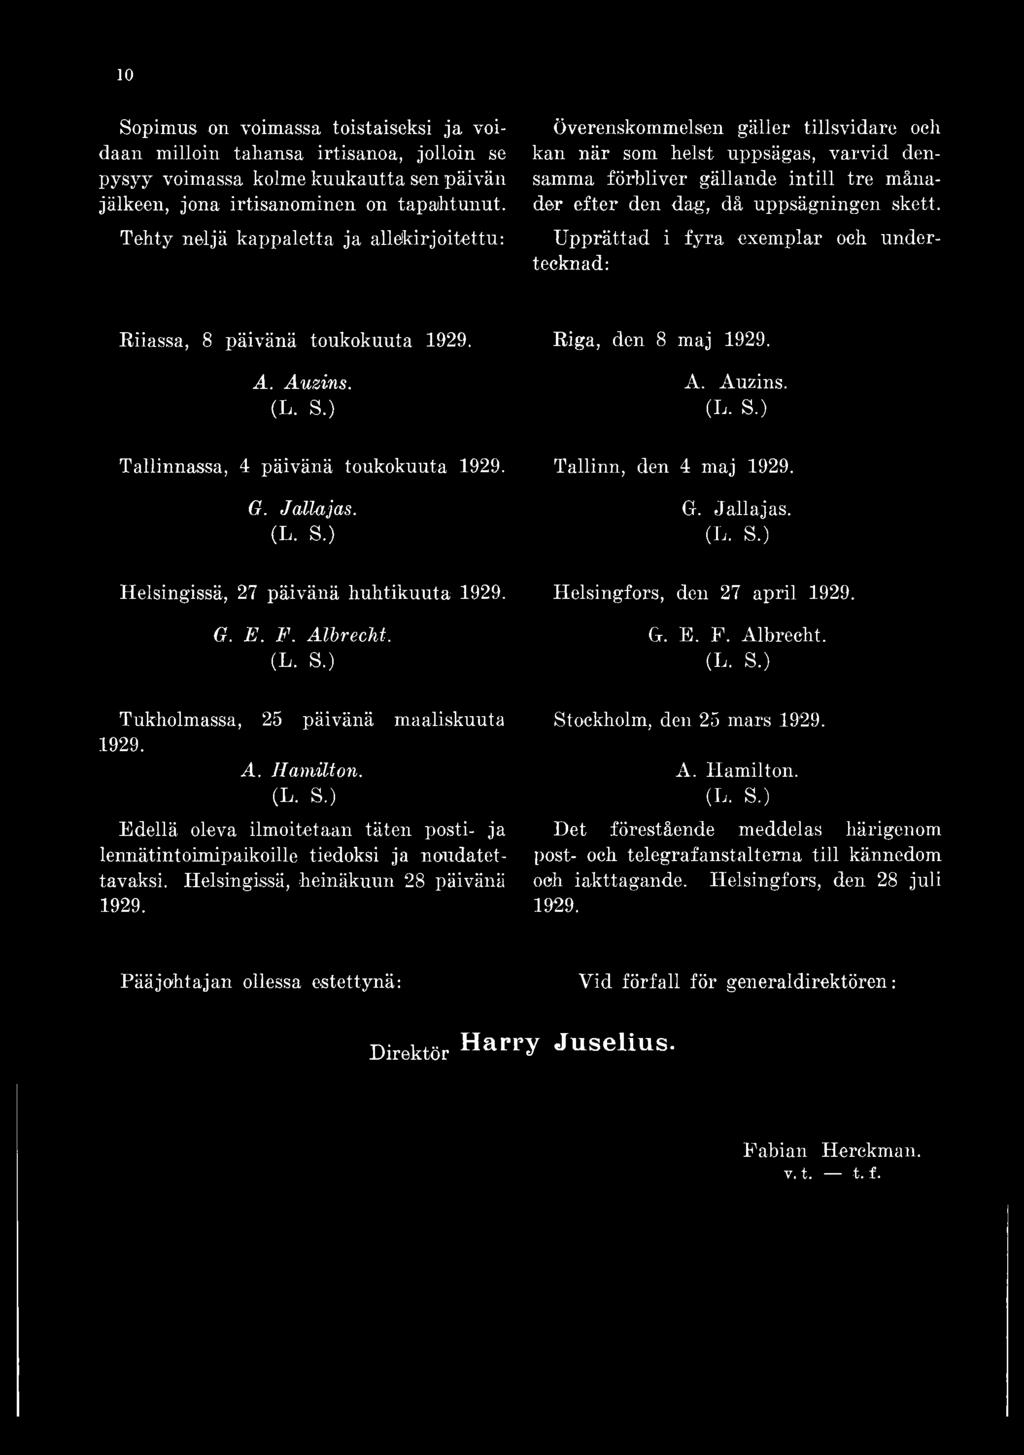 skett. Upprättad i fyra exemplar och undertecknad: Riiassa, 8 päivänä toukokuuta 1929. A. Auzins. Tallinnassa, 4 päivänä toukokuuta 1929. G. Jallajas. Helsingissä, 27 päivänä huhtikuuta 1929. G. E. F.